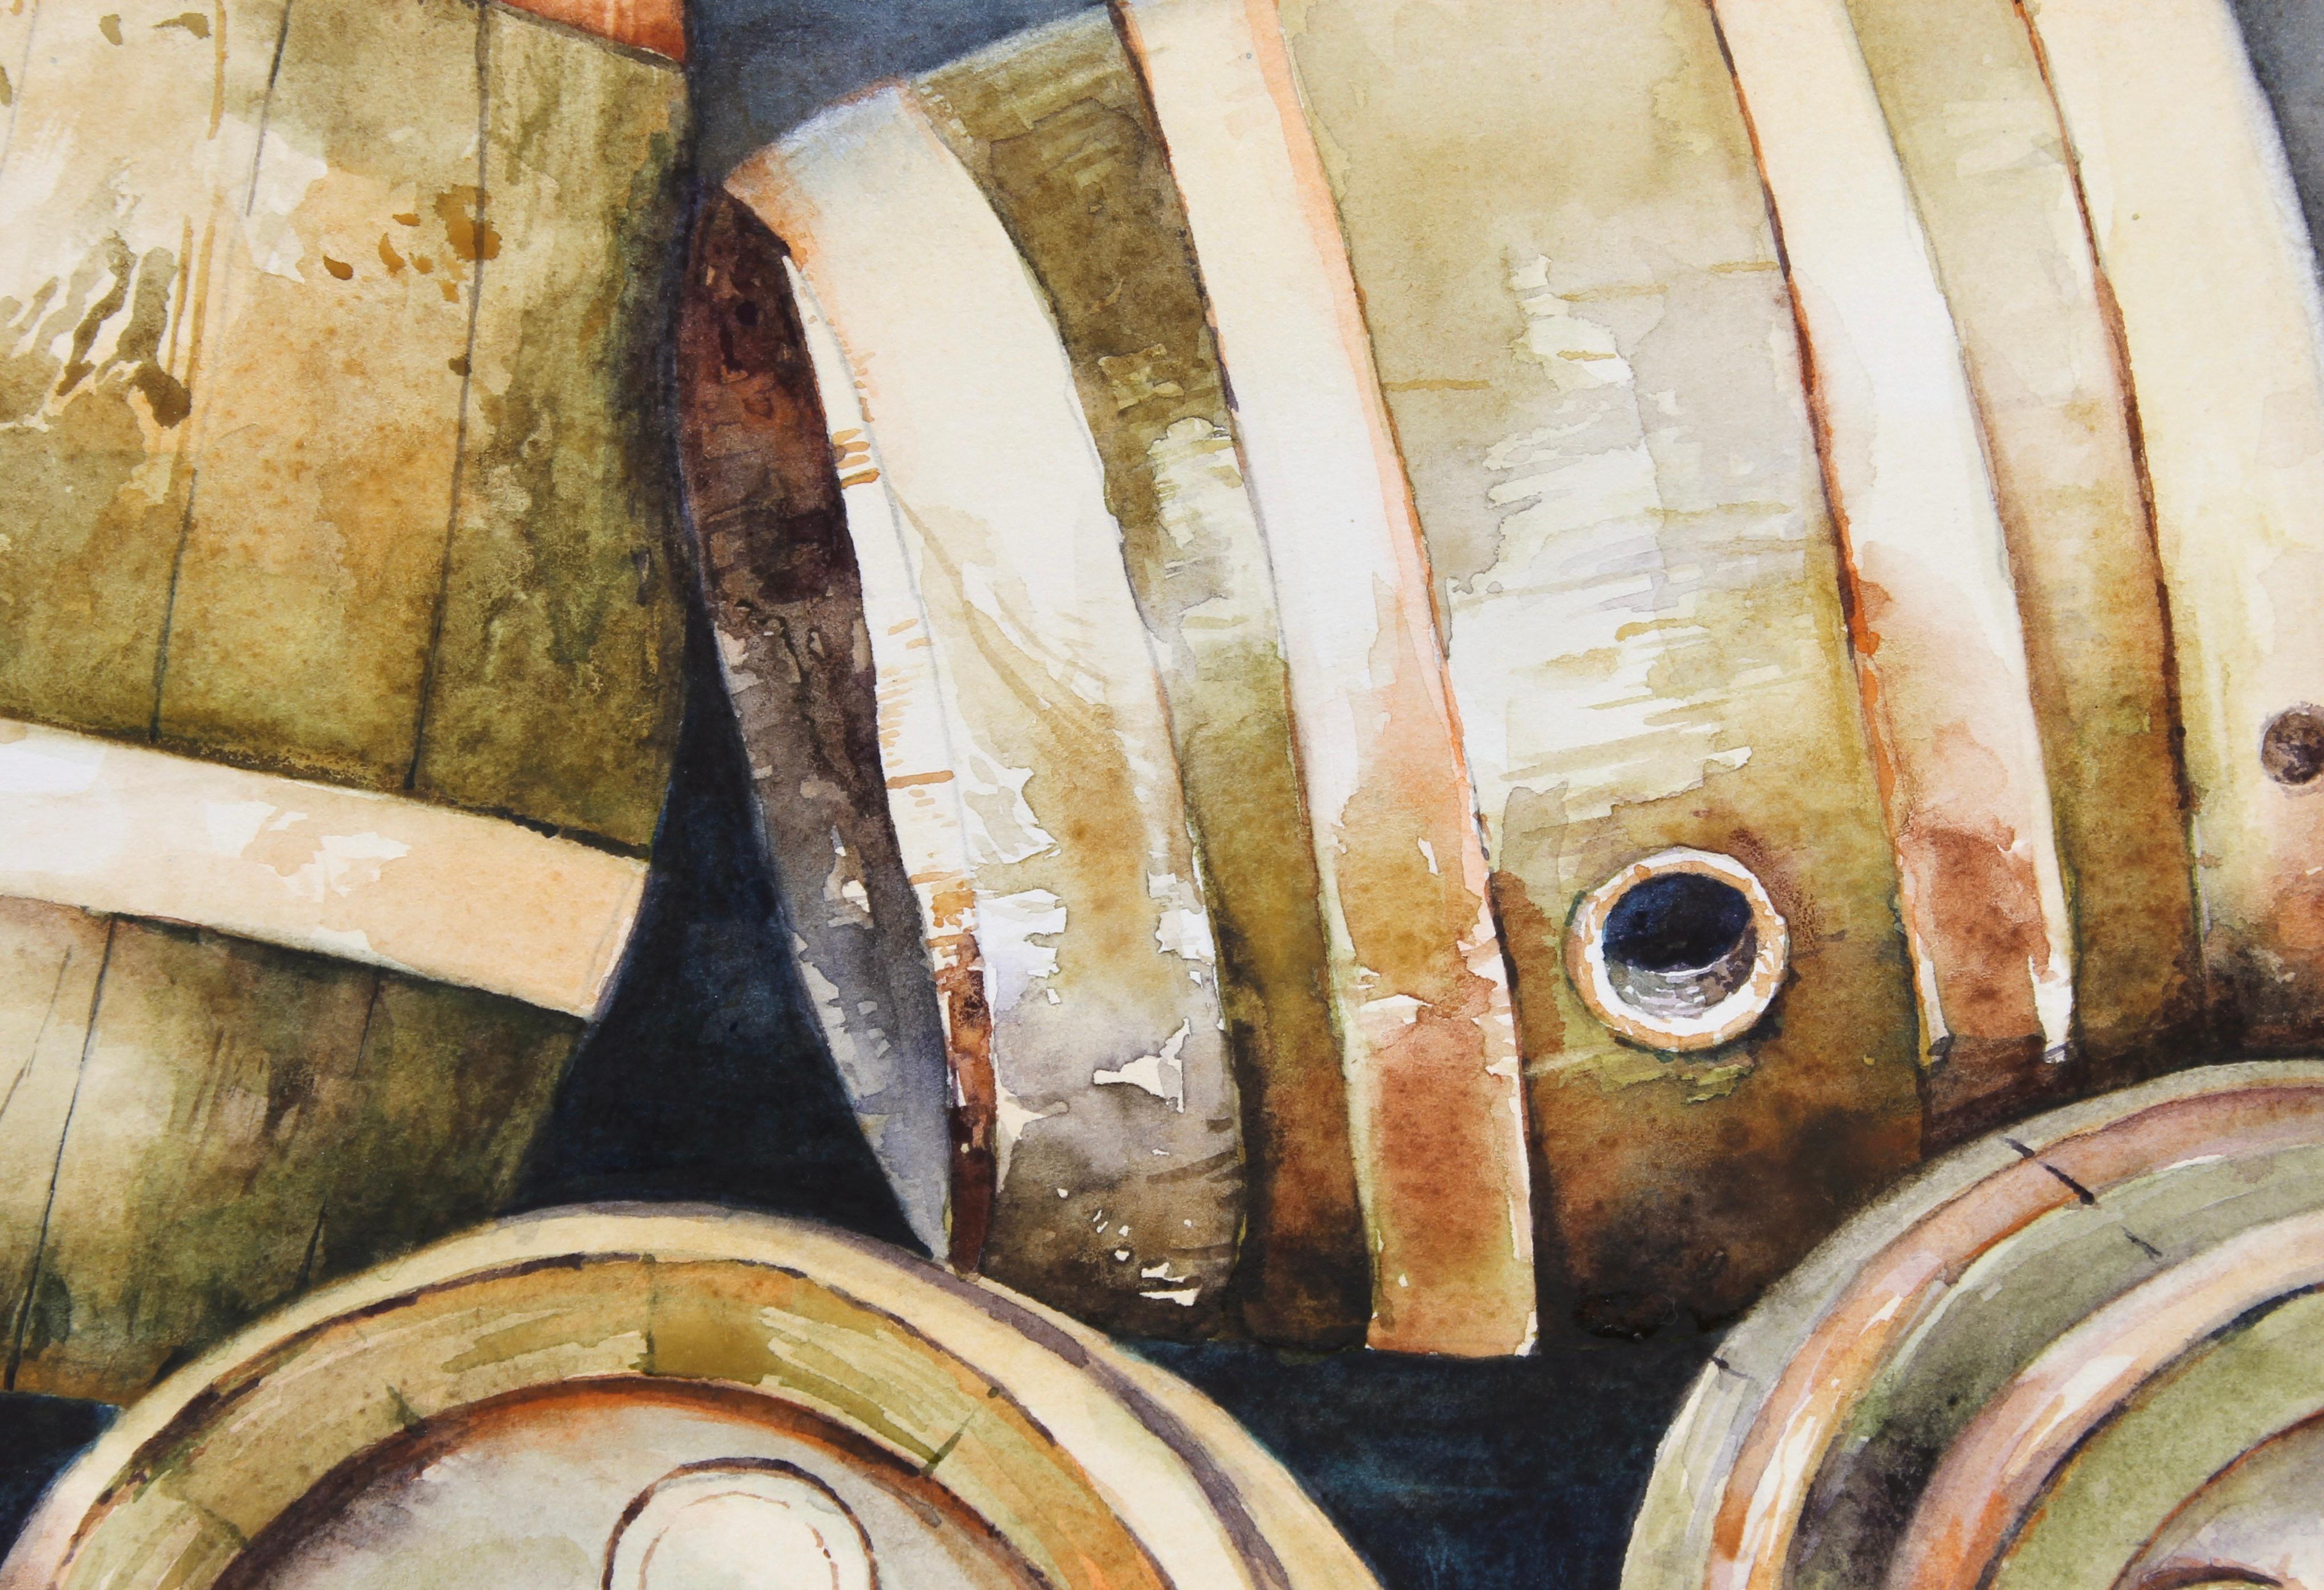 <p>Kommentare des Künstlers<br>Der Künstler Dwight Smith malt ein Stillleben mit einer Blumenvase, die auf einem Haufen von Fässern steht. Eine Ansammlung von Weinfässern in warmen Farbtönen stapelt sich vor einem kontrastierenden, gealterten